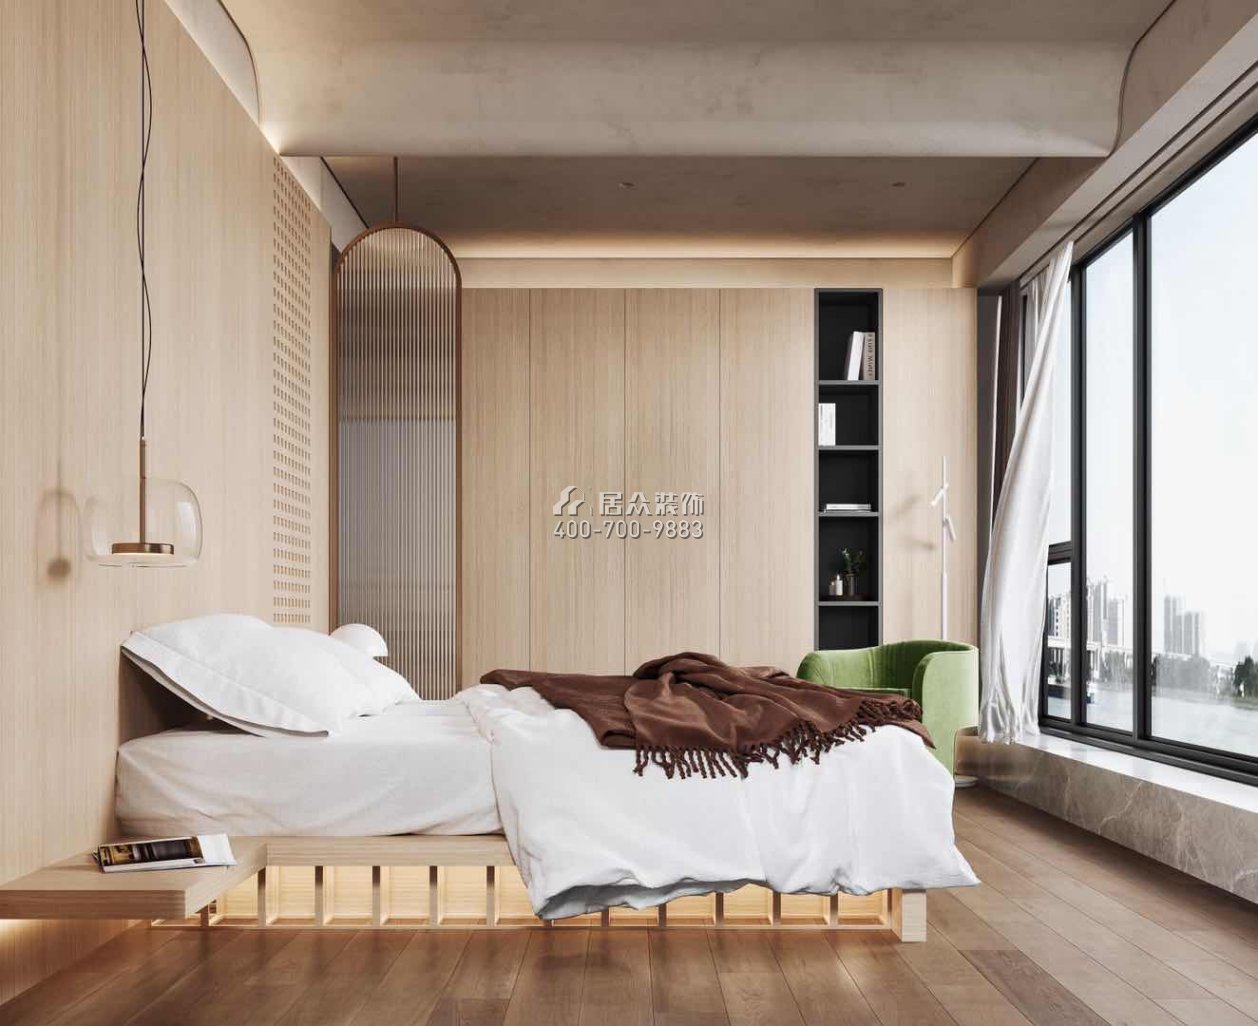 海洋半岛190平方米现代简约风格平层户型卧室装修效果图